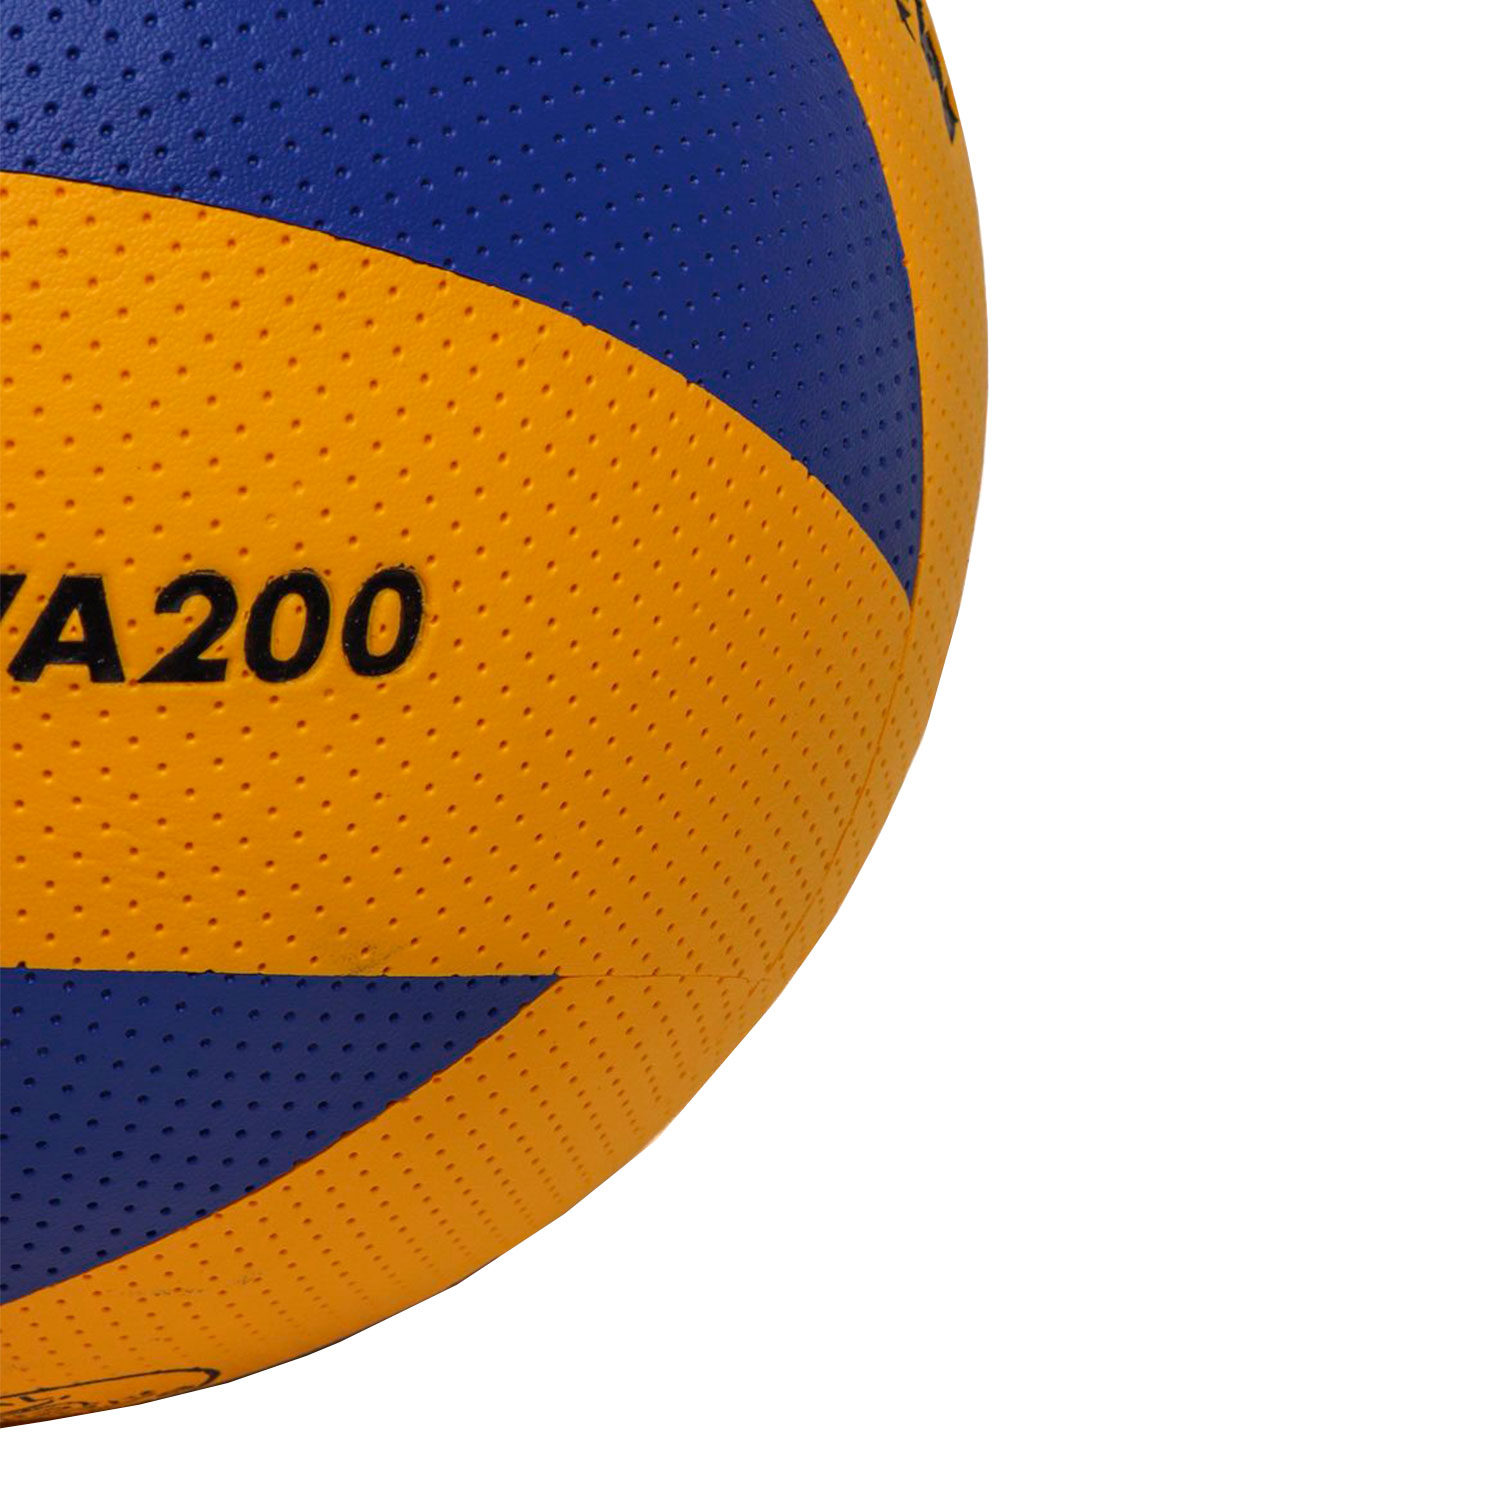 Волейбольный мяч Mikasa MVA-200, купить волейбольный мяч 